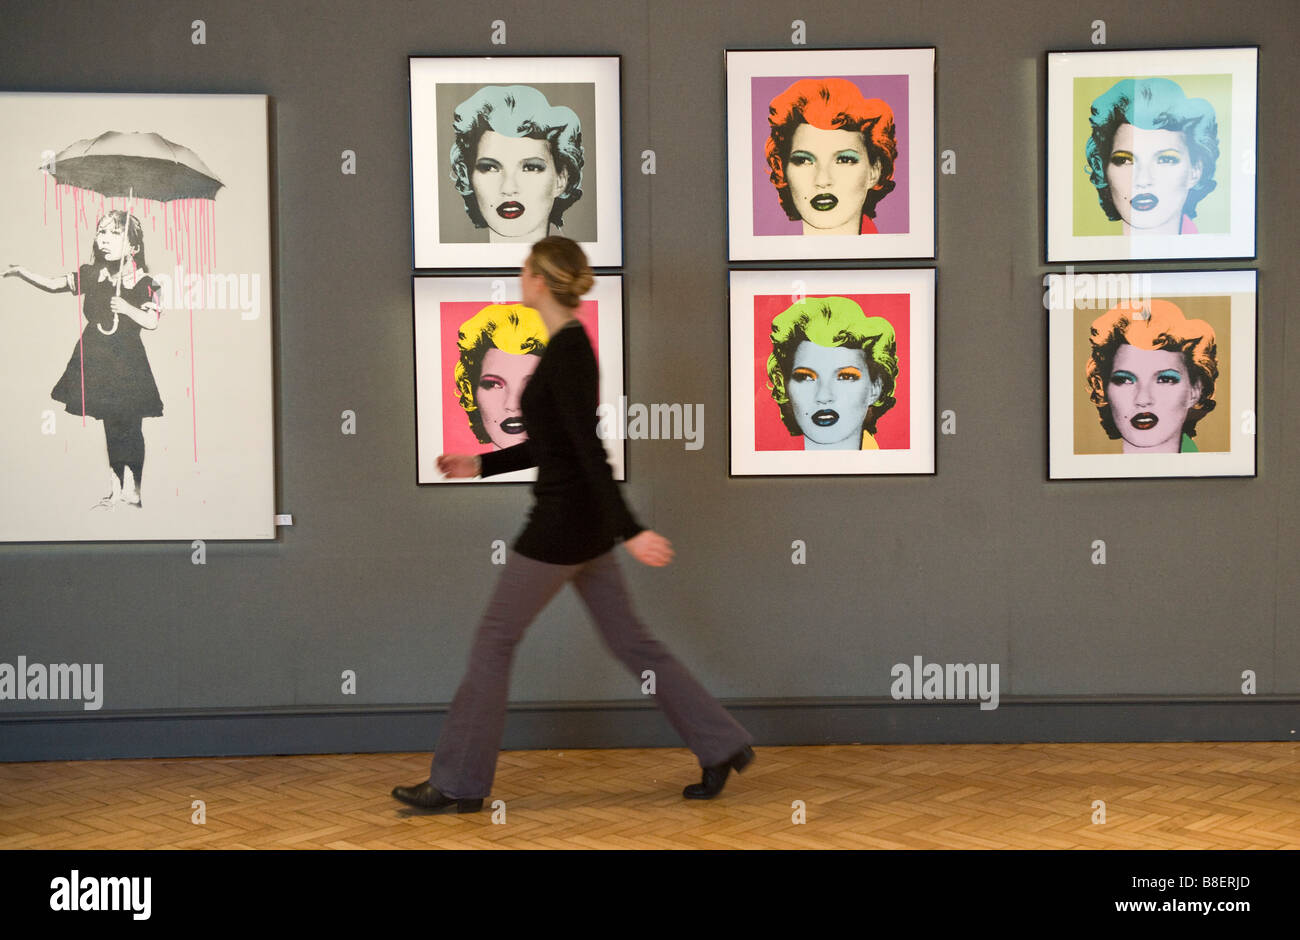 Sei stampe del modello Kate Moss per artista Banksy ispirato da Andy Warhol iconici immagine di Marilyn Monroe a Bonham's London Foto Stock